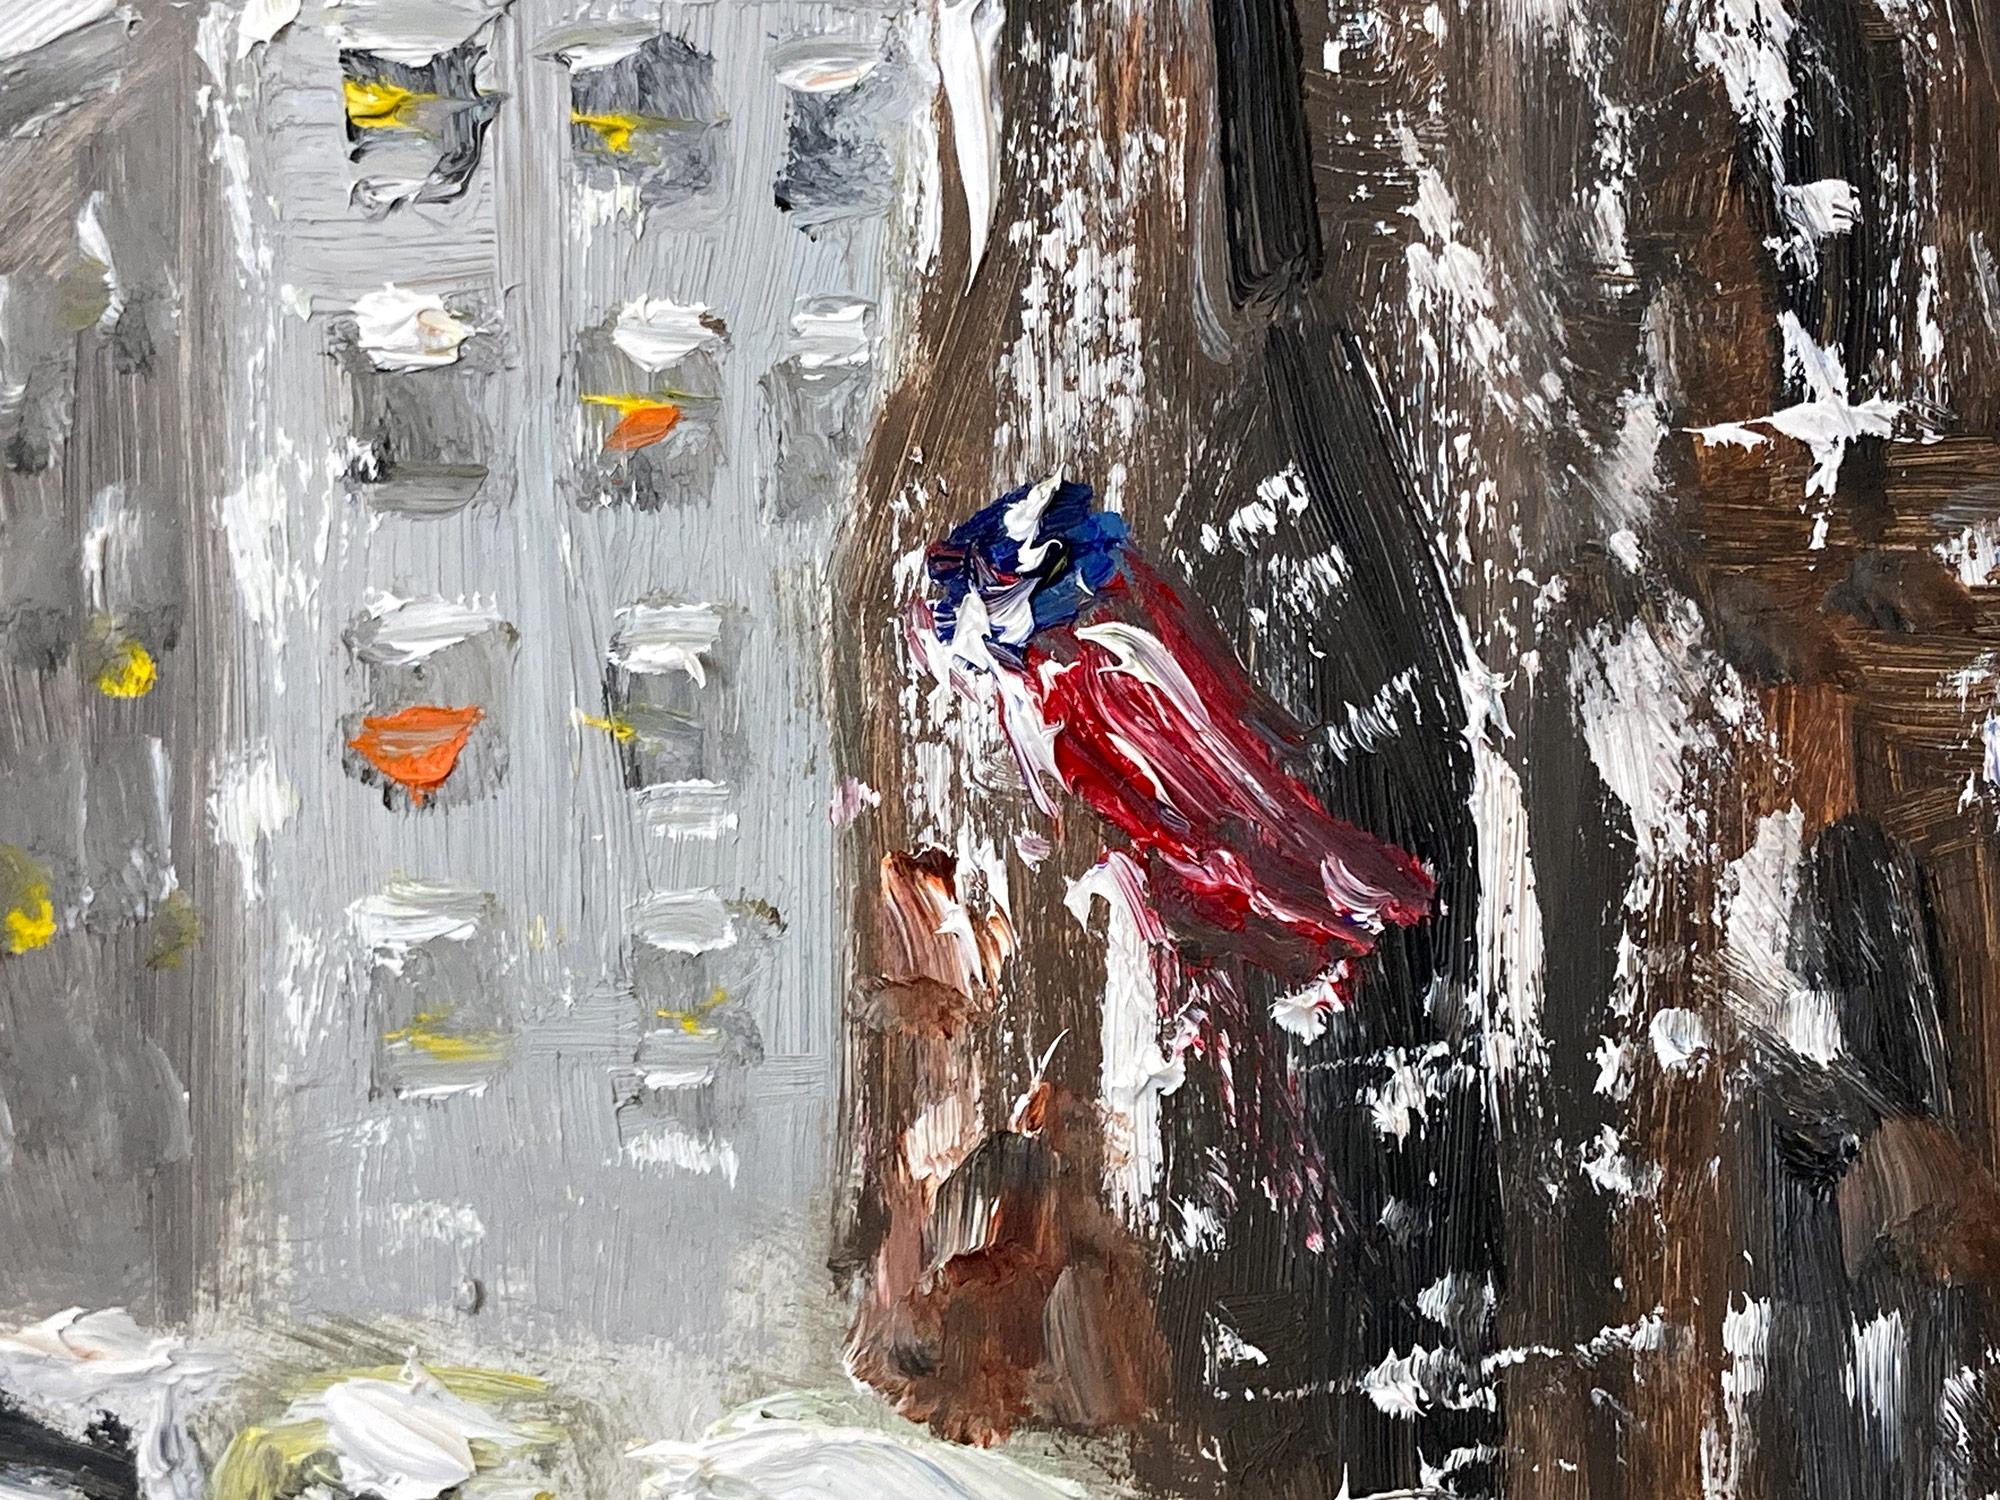 Eine bezaubernde Darstellung des Schnees auf der 5th Avenue in New York City mit spazierenden Figuren und Autos in der Ferne. Eine gemütliche impressionistische Straßenszene mit Farben aus Kobalt, Hellrosa, Weiß und gebranntem Siena. Eine ikonische